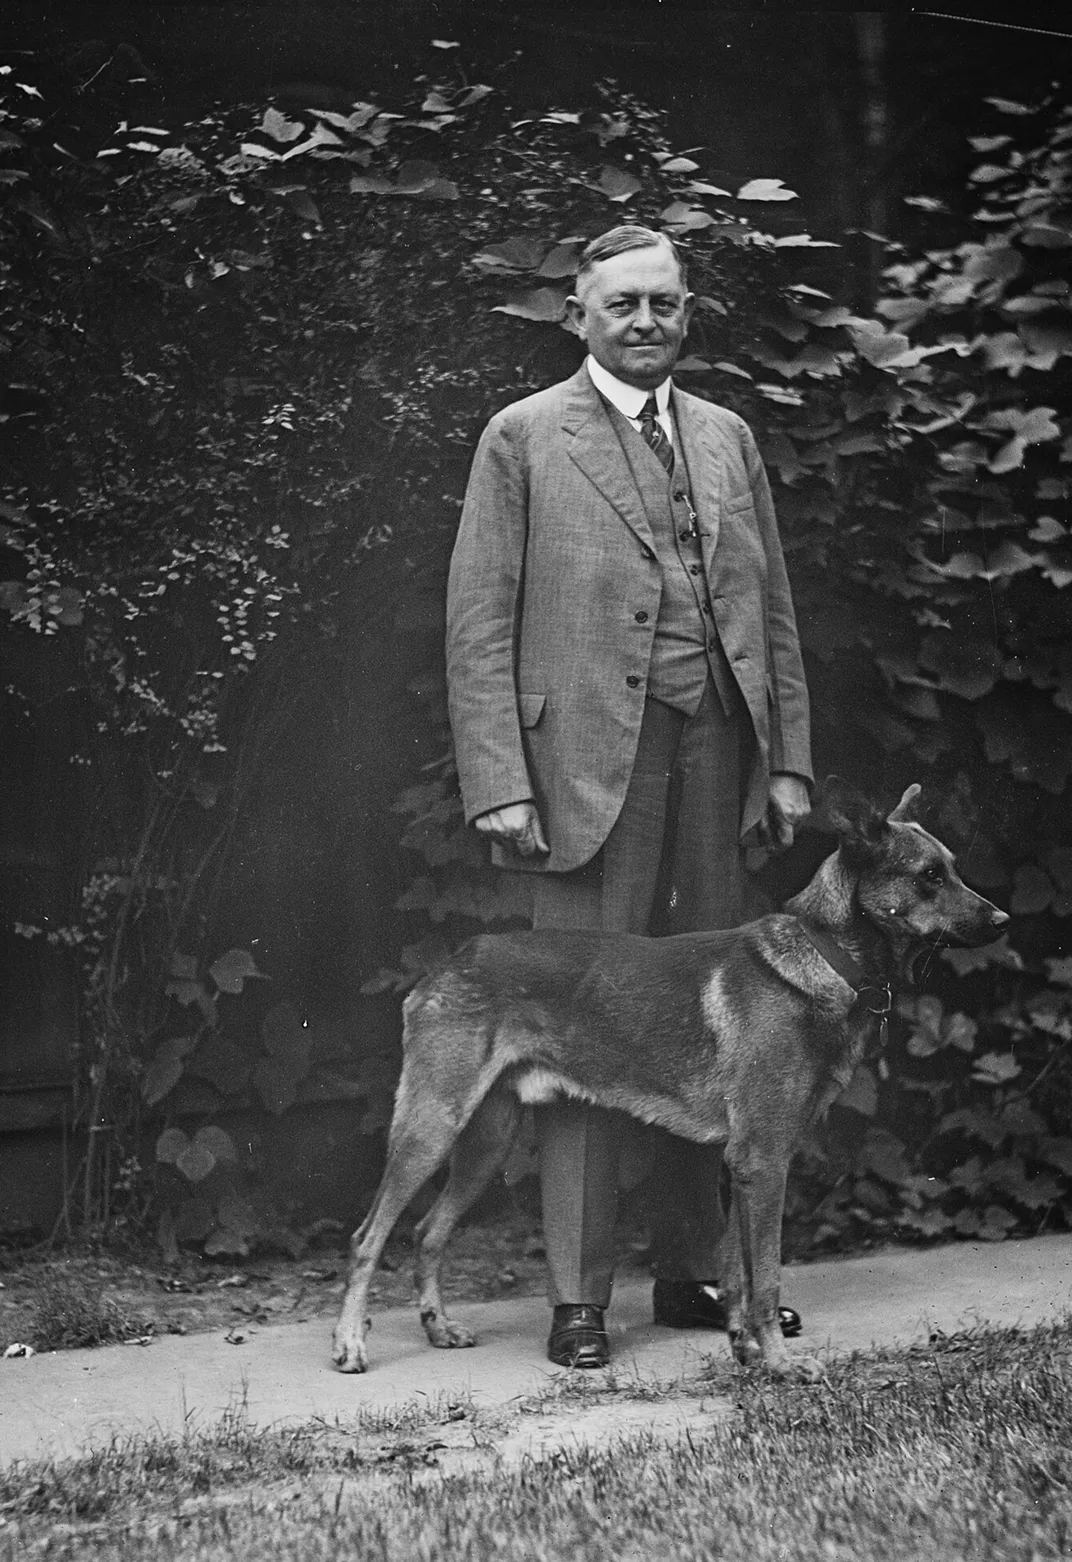 Oscar Underwood with a dog